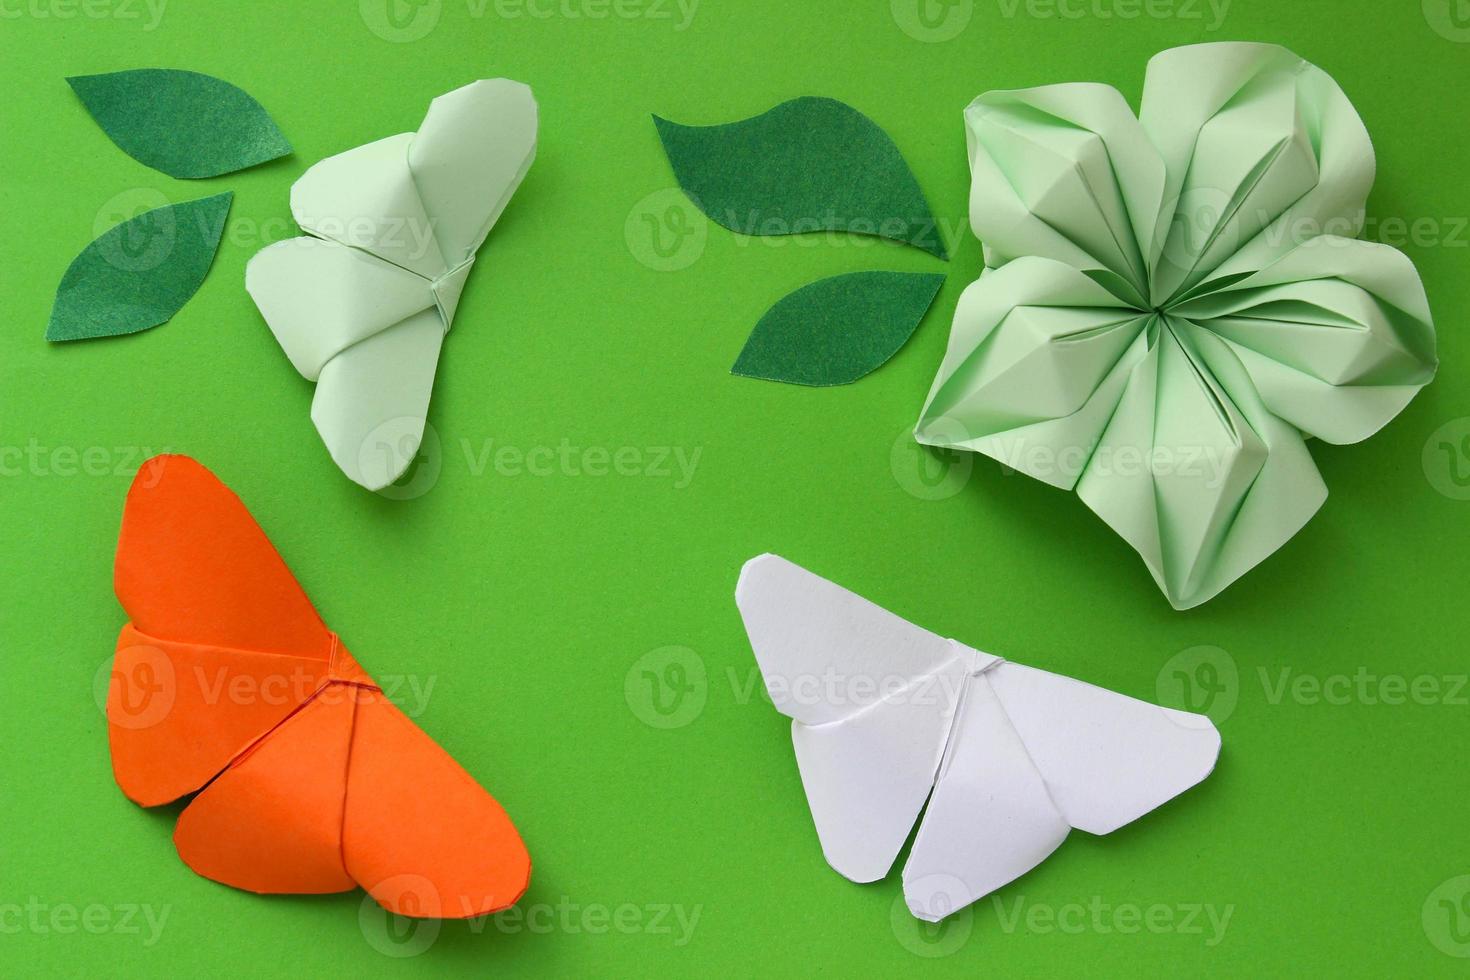 fondo de papel de origami con mariposas, flores y hojas. composición de origami. arte de papel foto